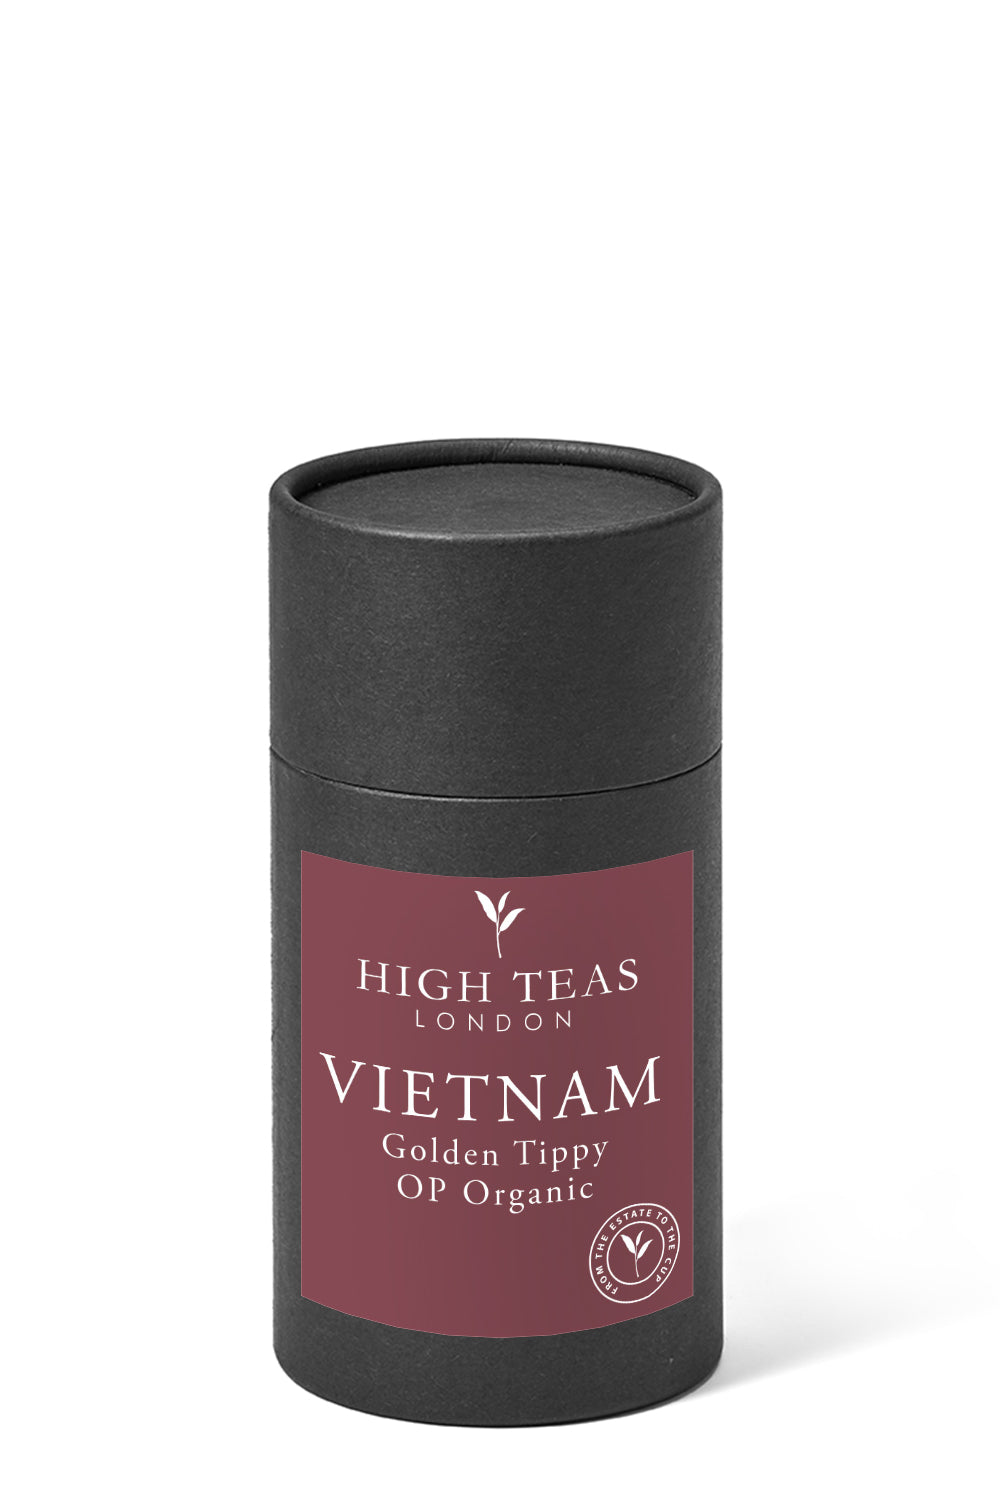 Vietnam Golden Tippy OP Organic-60g gift-Loose Leaf Tea-High Teas